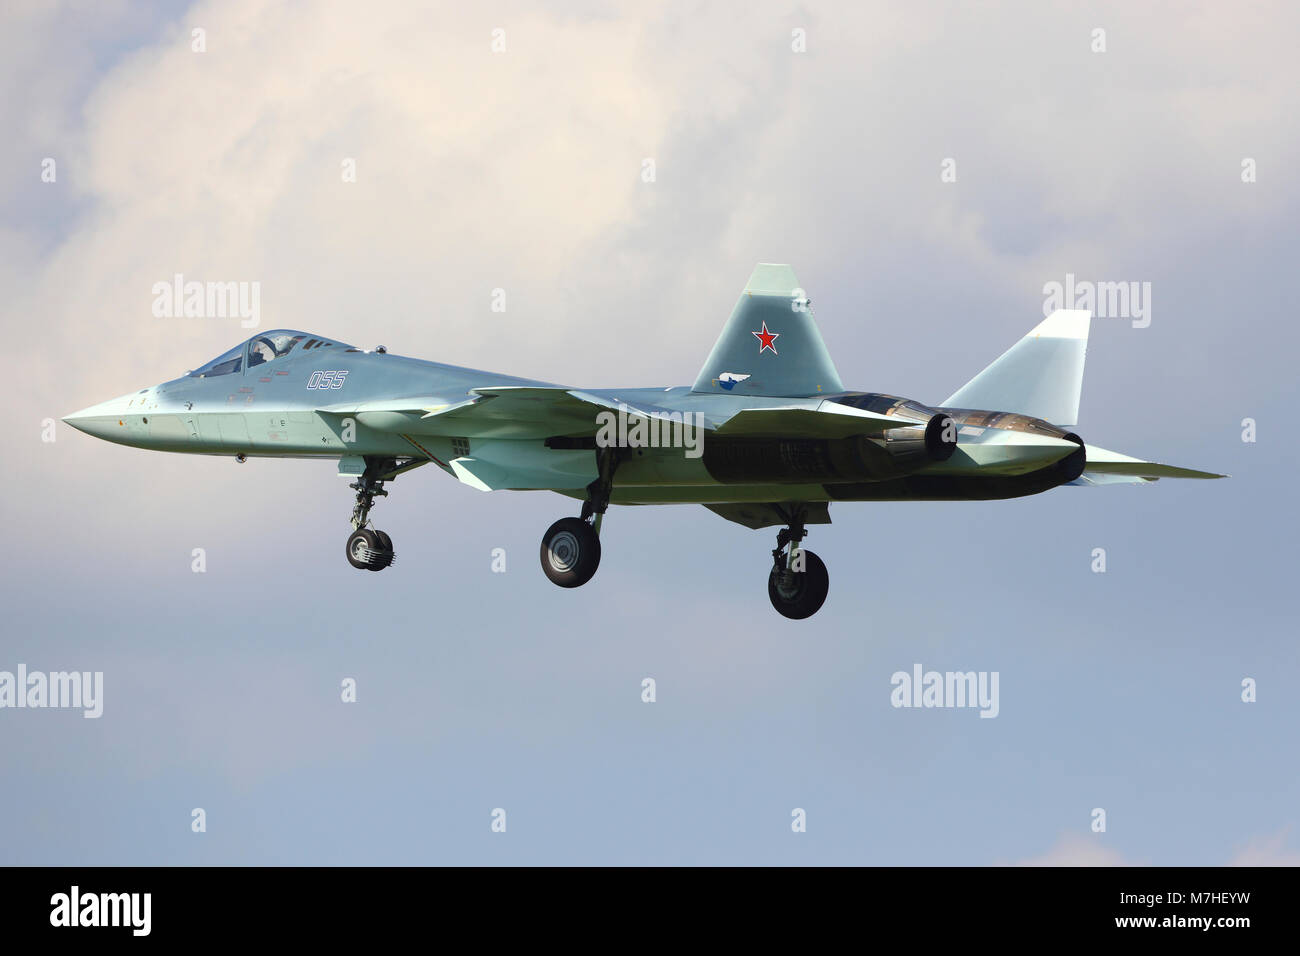 T-50 PAK-FA Russe de cinquième génération jet fighter landing. Banque D'Images